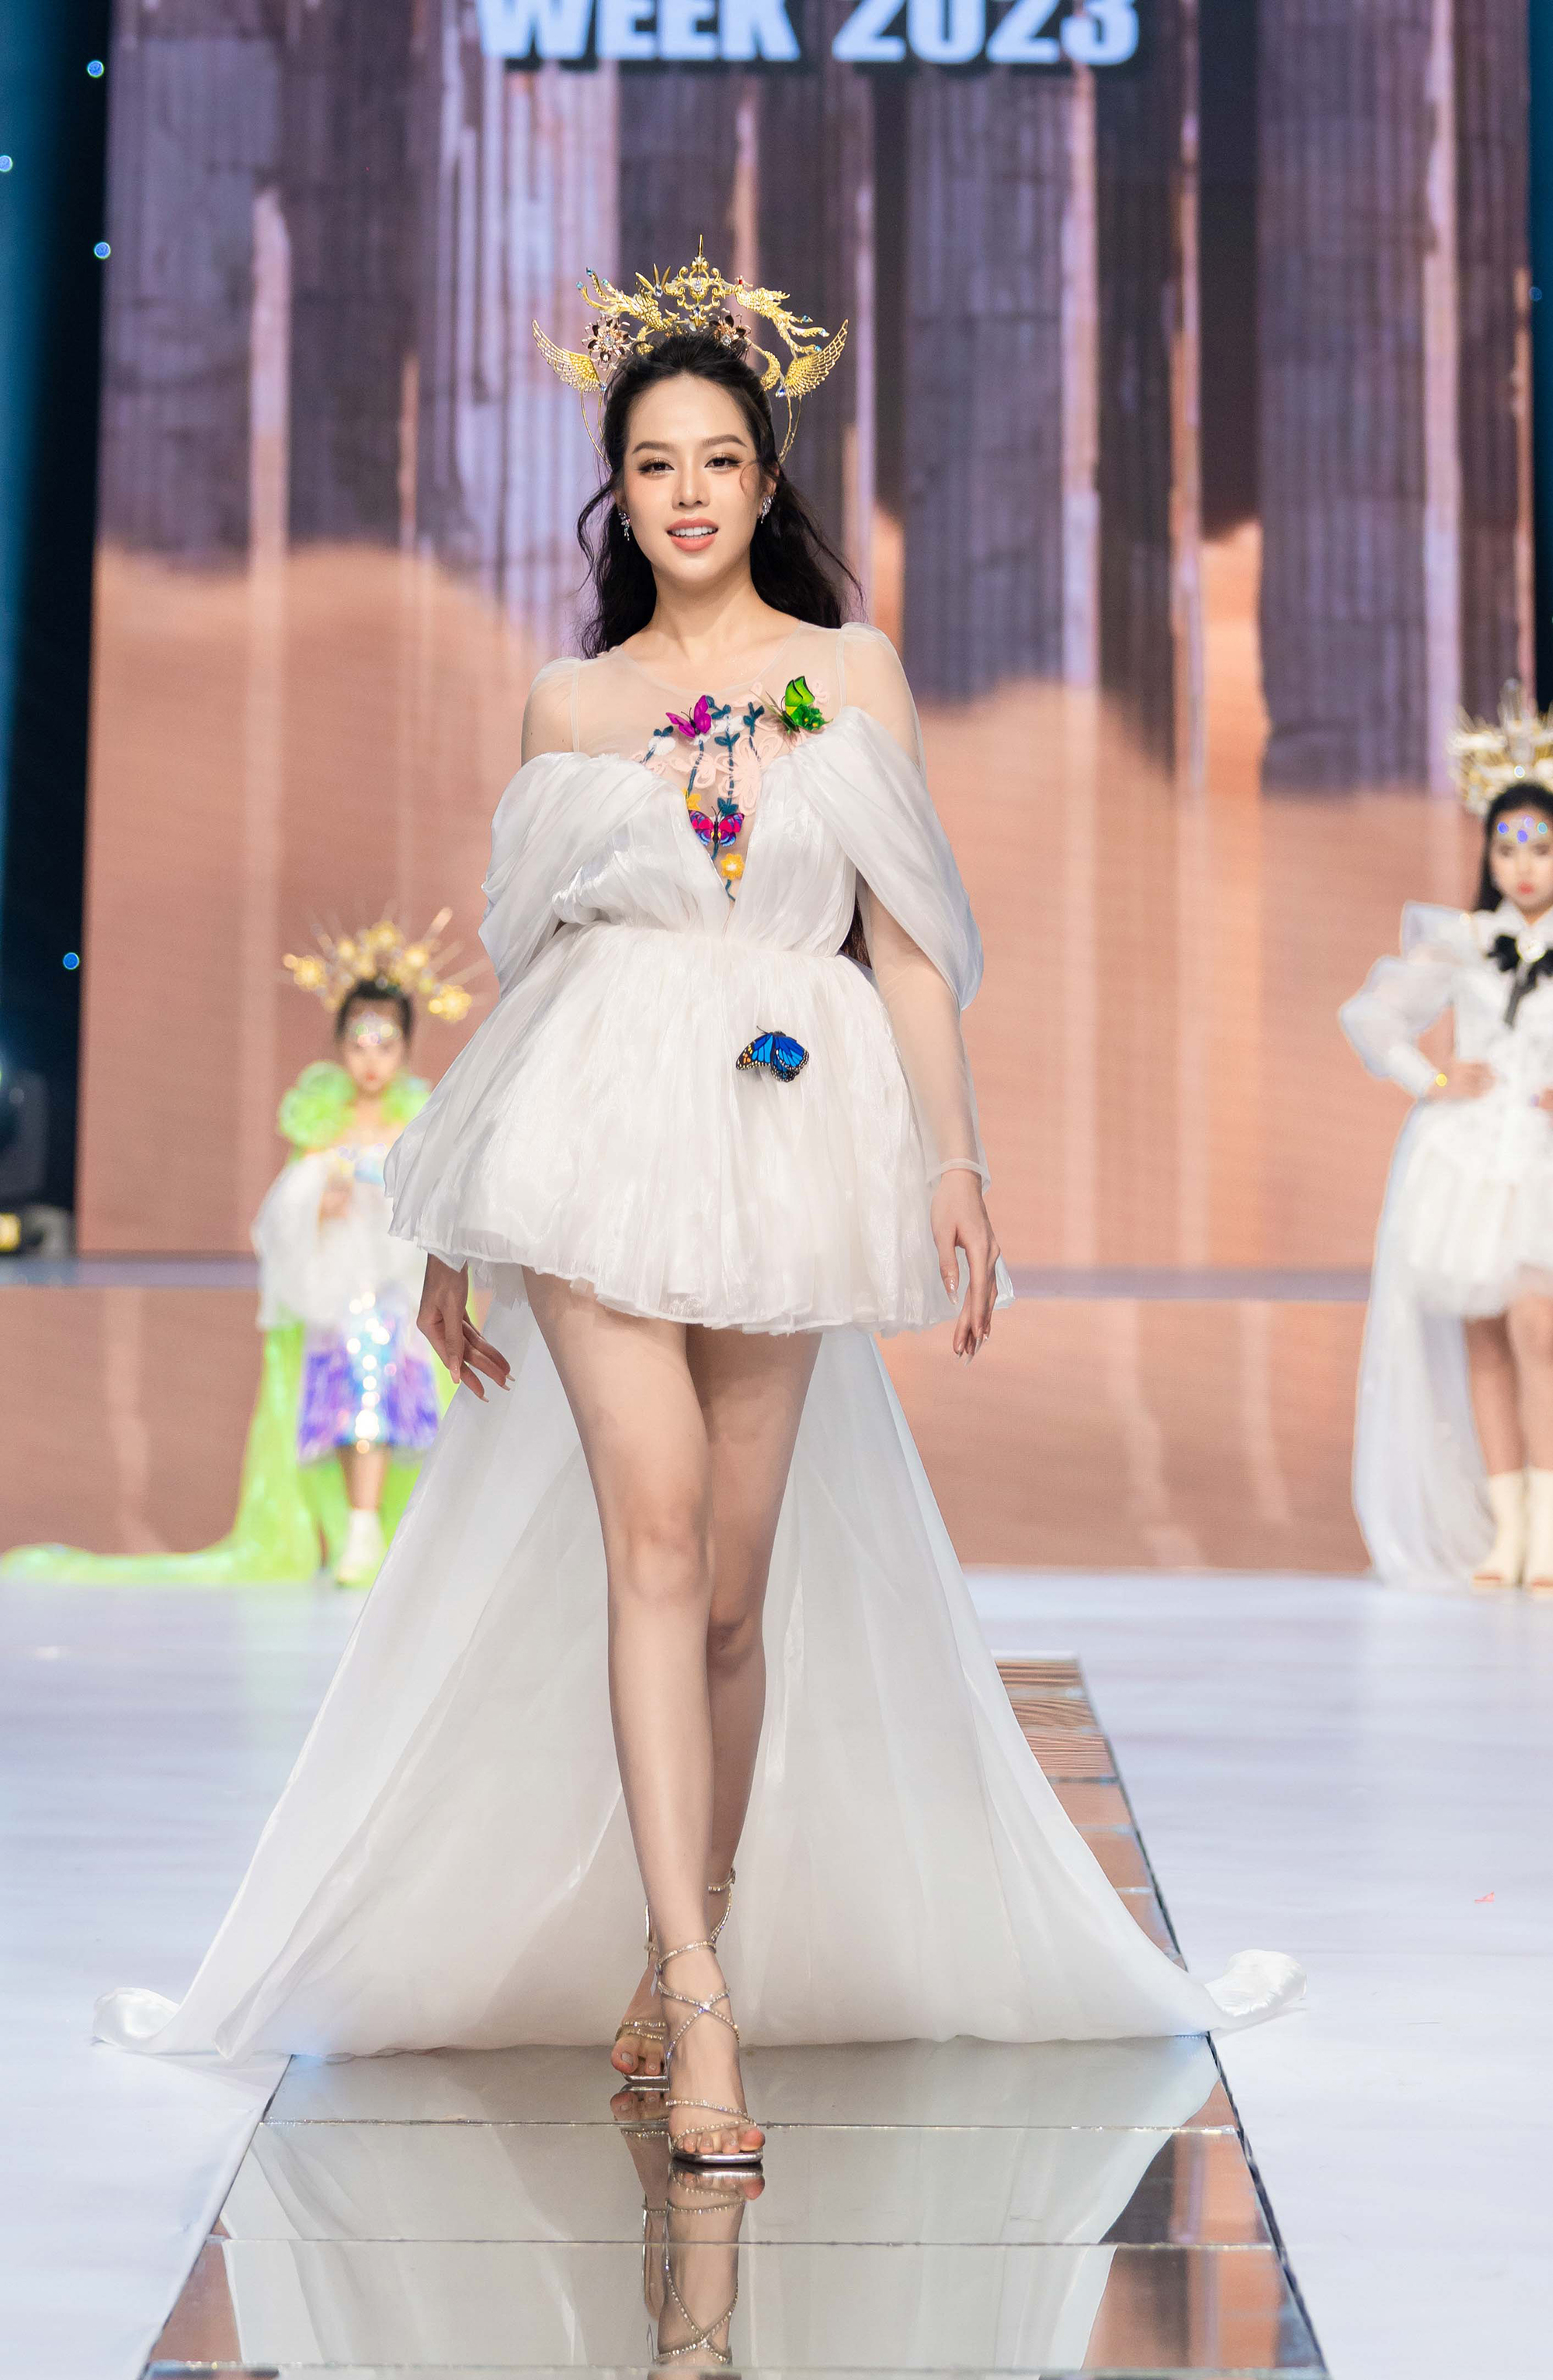 Hoa hậu Bảo Ngọc catwalk với trang phục nặng 30kg - Ảnh 2.